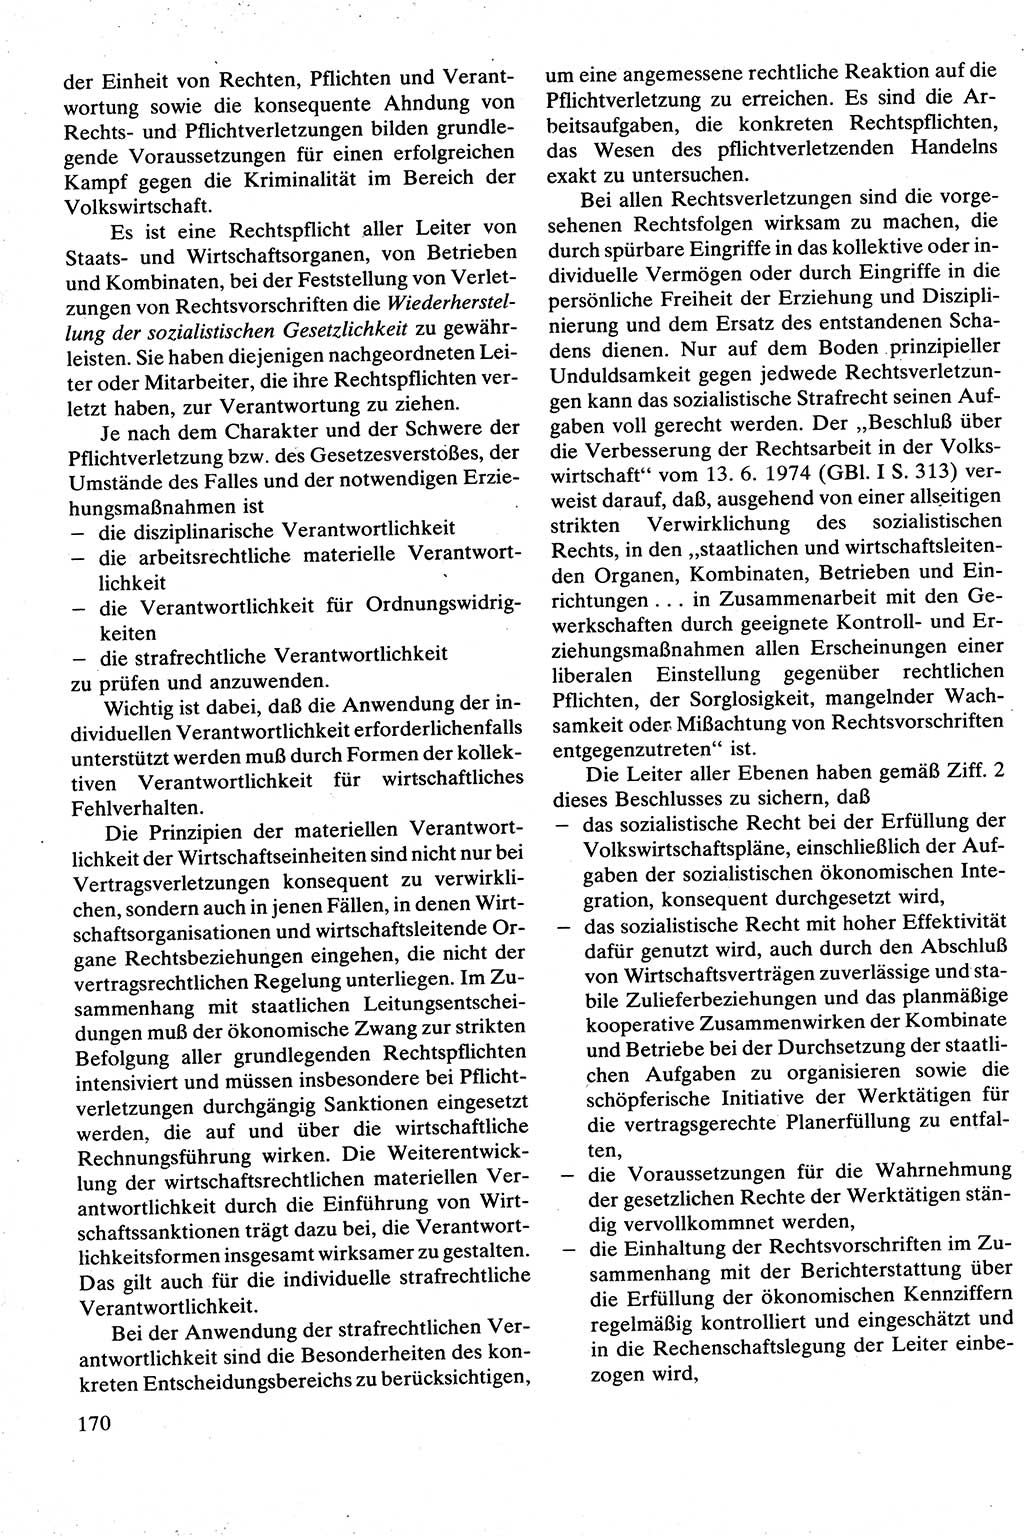 Strafrecht [Deutsche Demokratische Republik (DDR)], Besonderer Teil, Lehrbuch 1981, Seite 170 (Strafr. DDR BT Lb. 1981, S. 170)